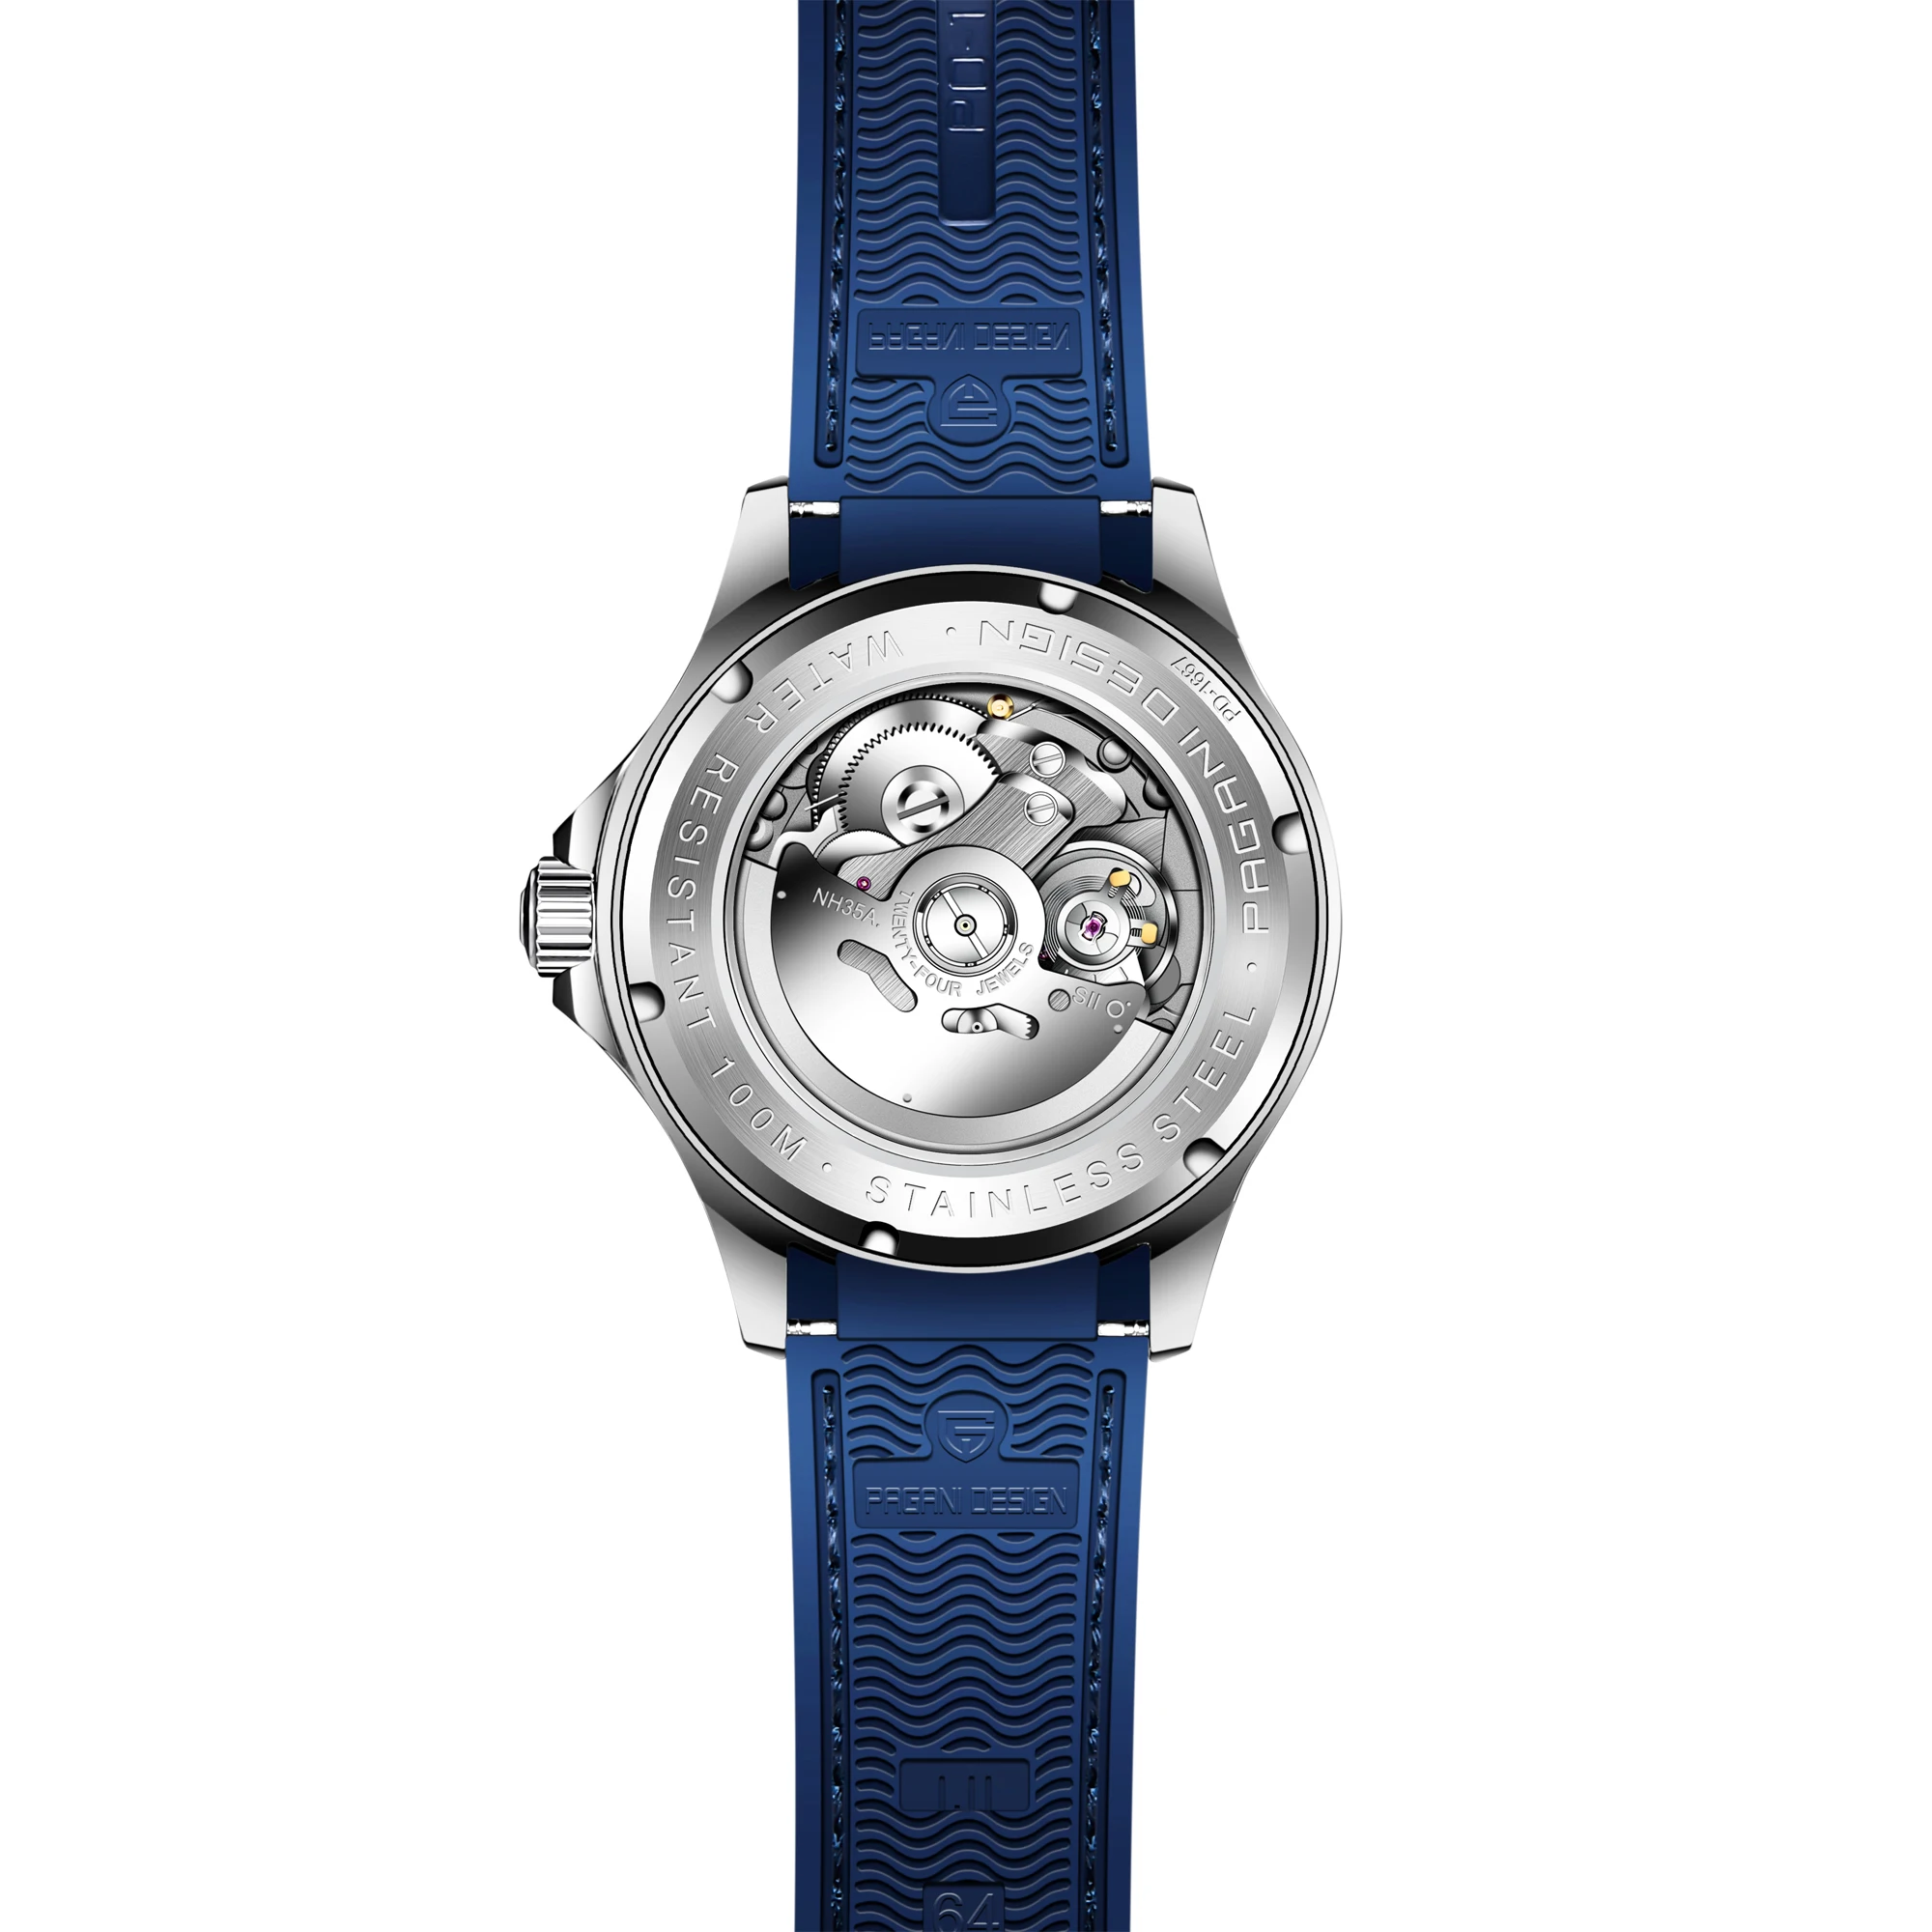 PAGANI Дизайн Новый модный бренд Силиконовые Мужские автоматические часы Топ 007